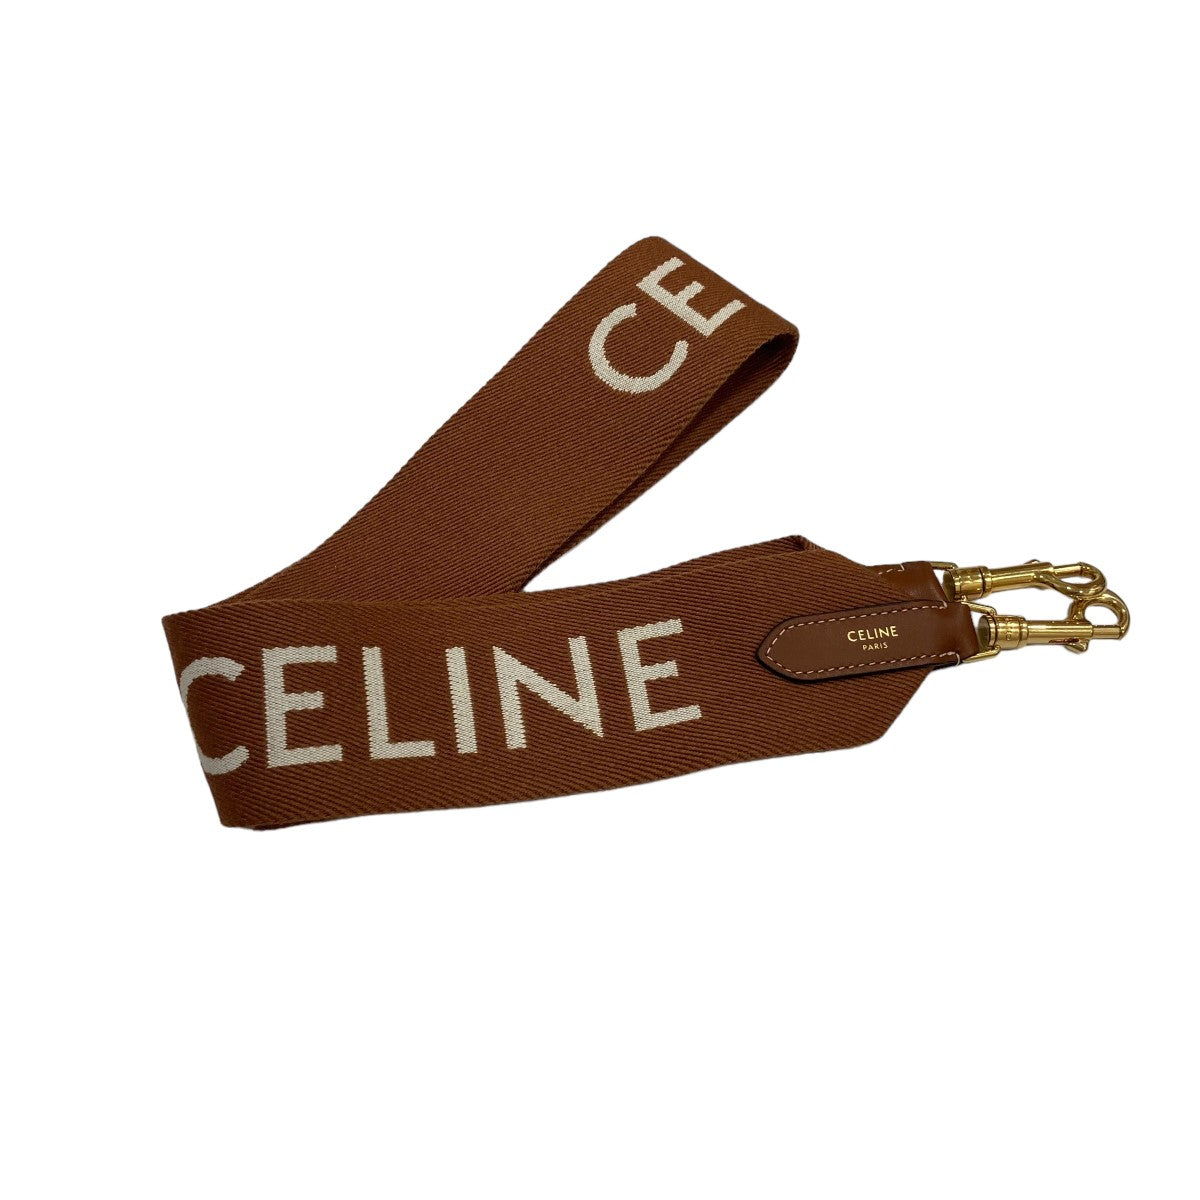 CELINE(セリーヌ) ジャカード ショートストラップ S-AN-3262 ブラウン 